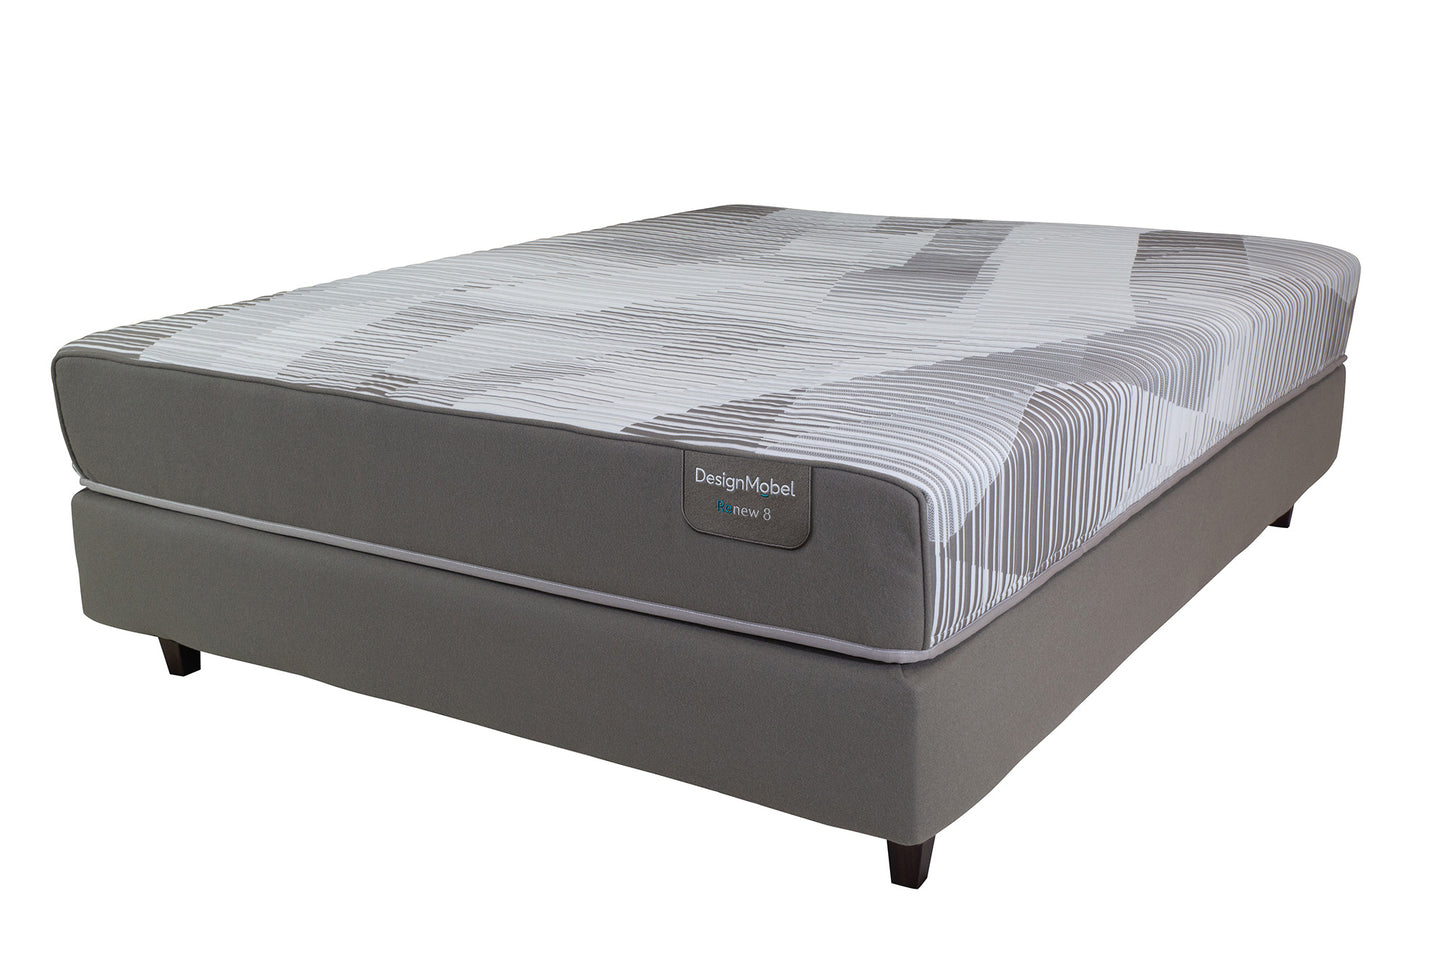 renew8-queen-mattress-2